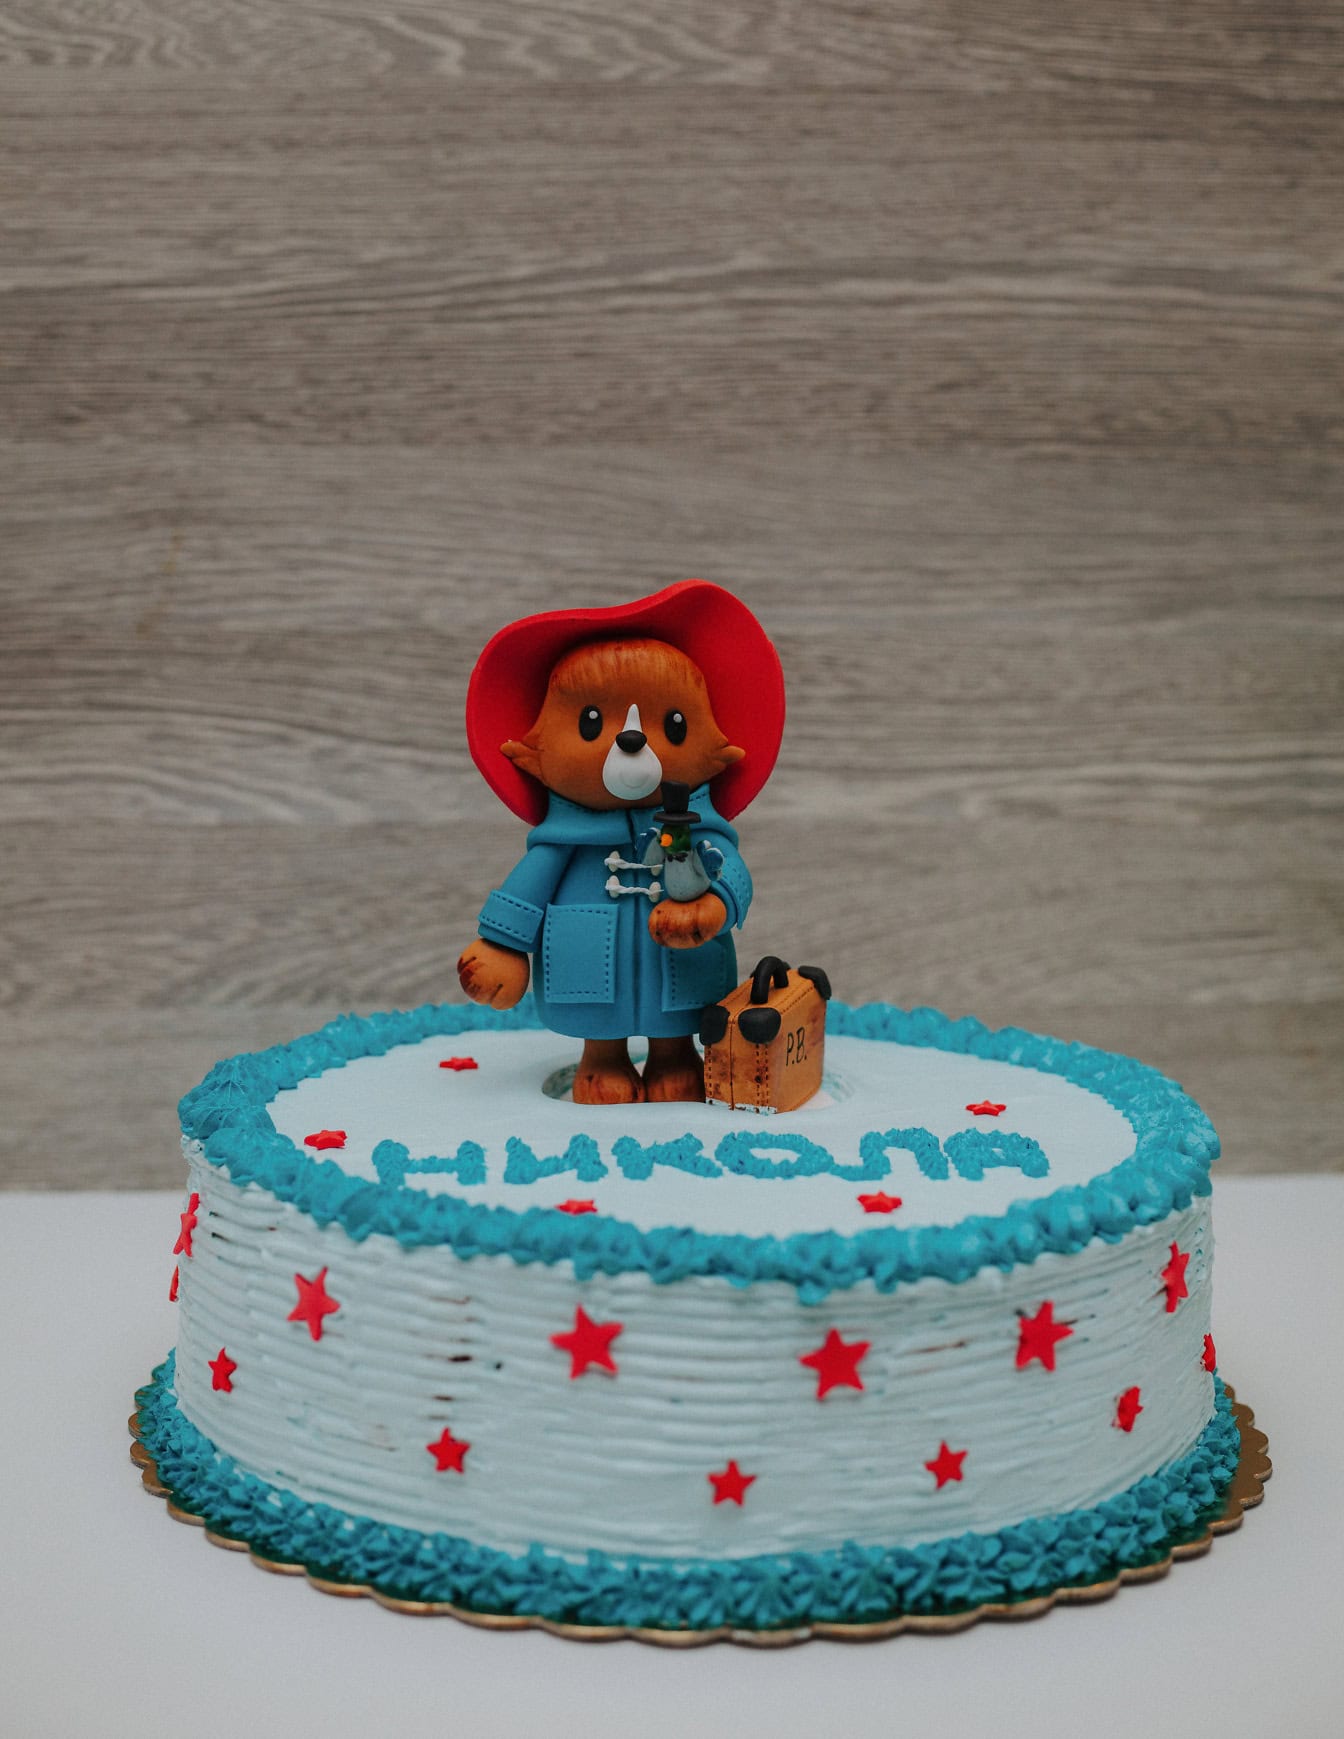 Святковий торт з прикрасою у формі плюшевого ведмедика Паддінгтона зверху